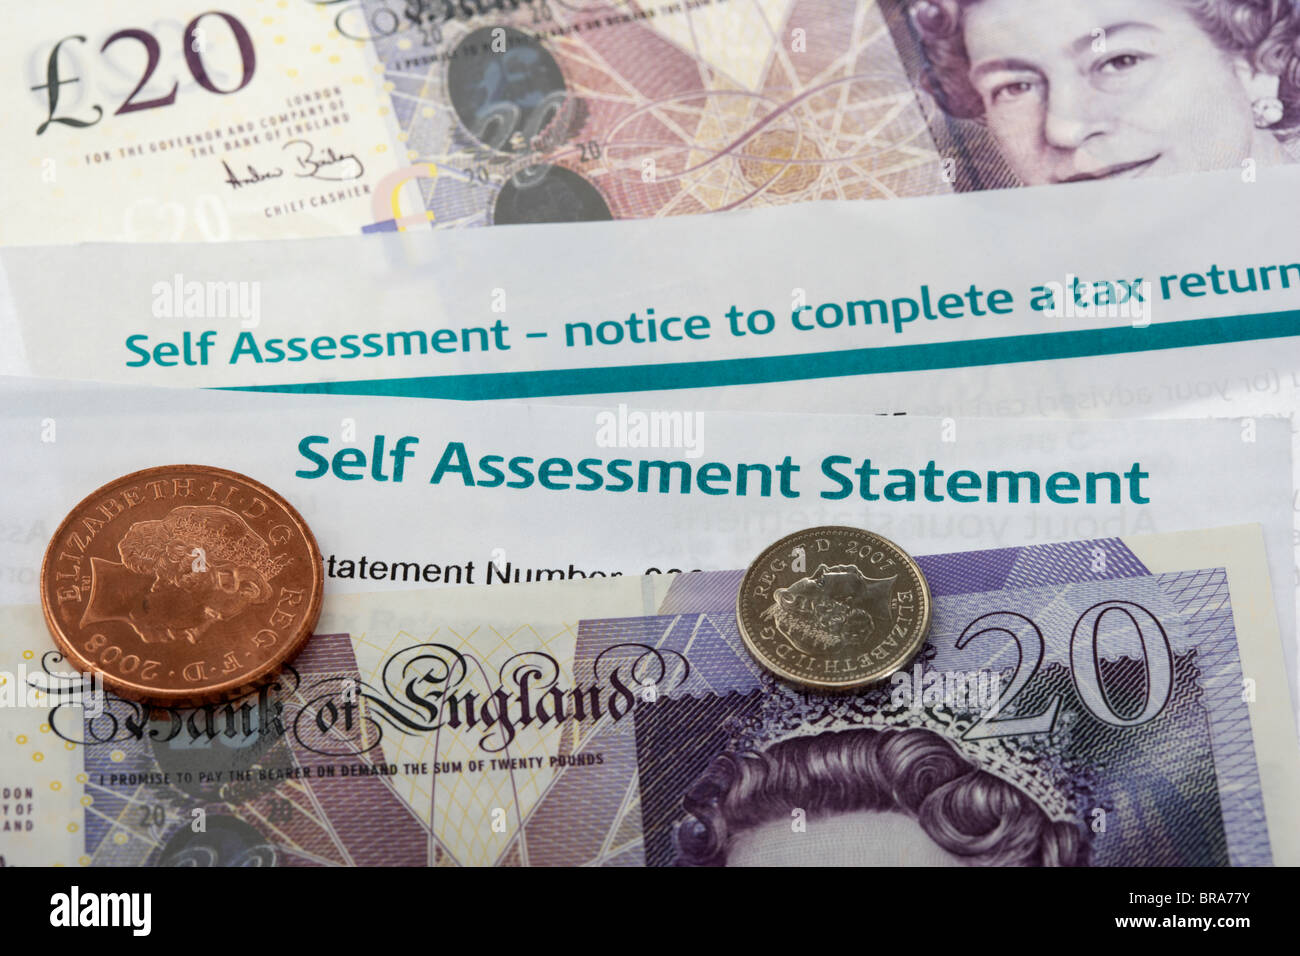 Hmrc self assessment dichiarazione e notifica per completare un ritorno fiscale con pagamento in contanti Foto Stock